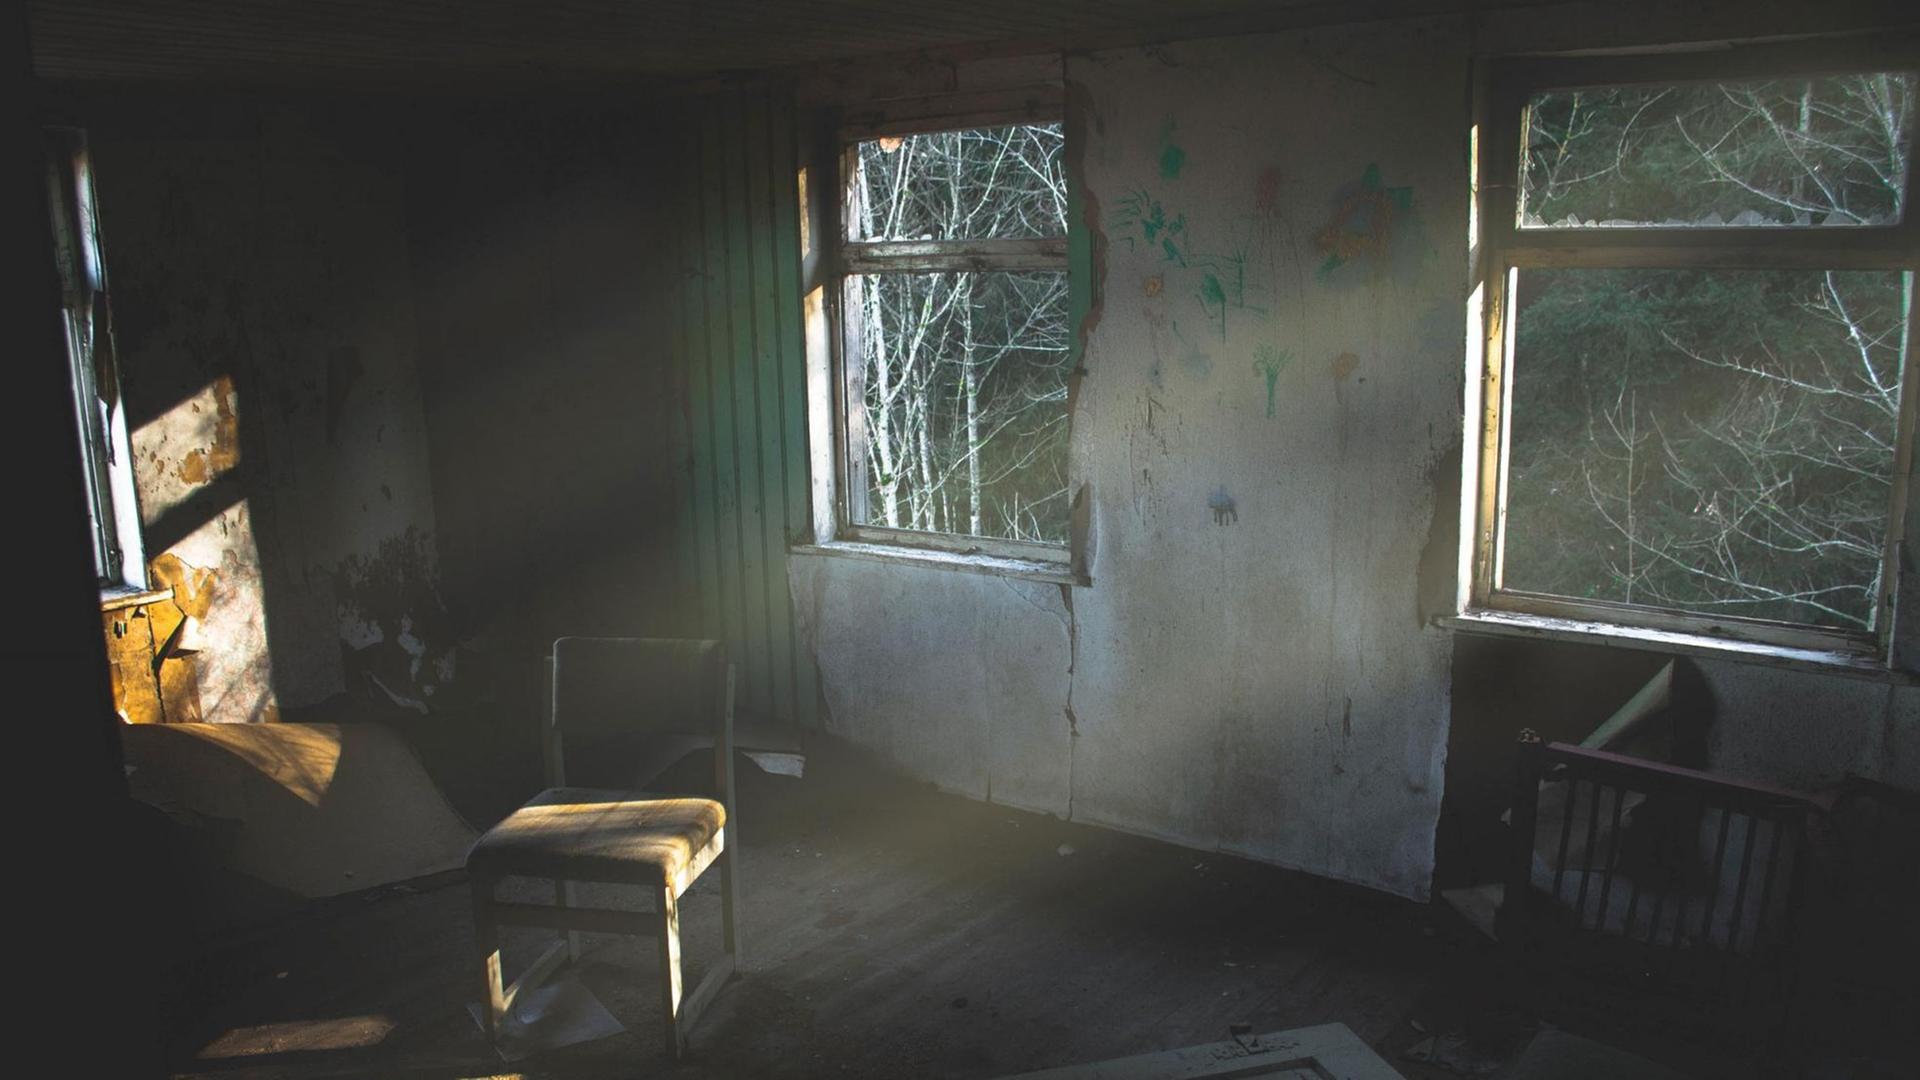 Blick in ein Haus, wo niemand mehr wohnt. Die Fenster sind kaputt, in der Mitte des Raumes steht ein Stuhl.